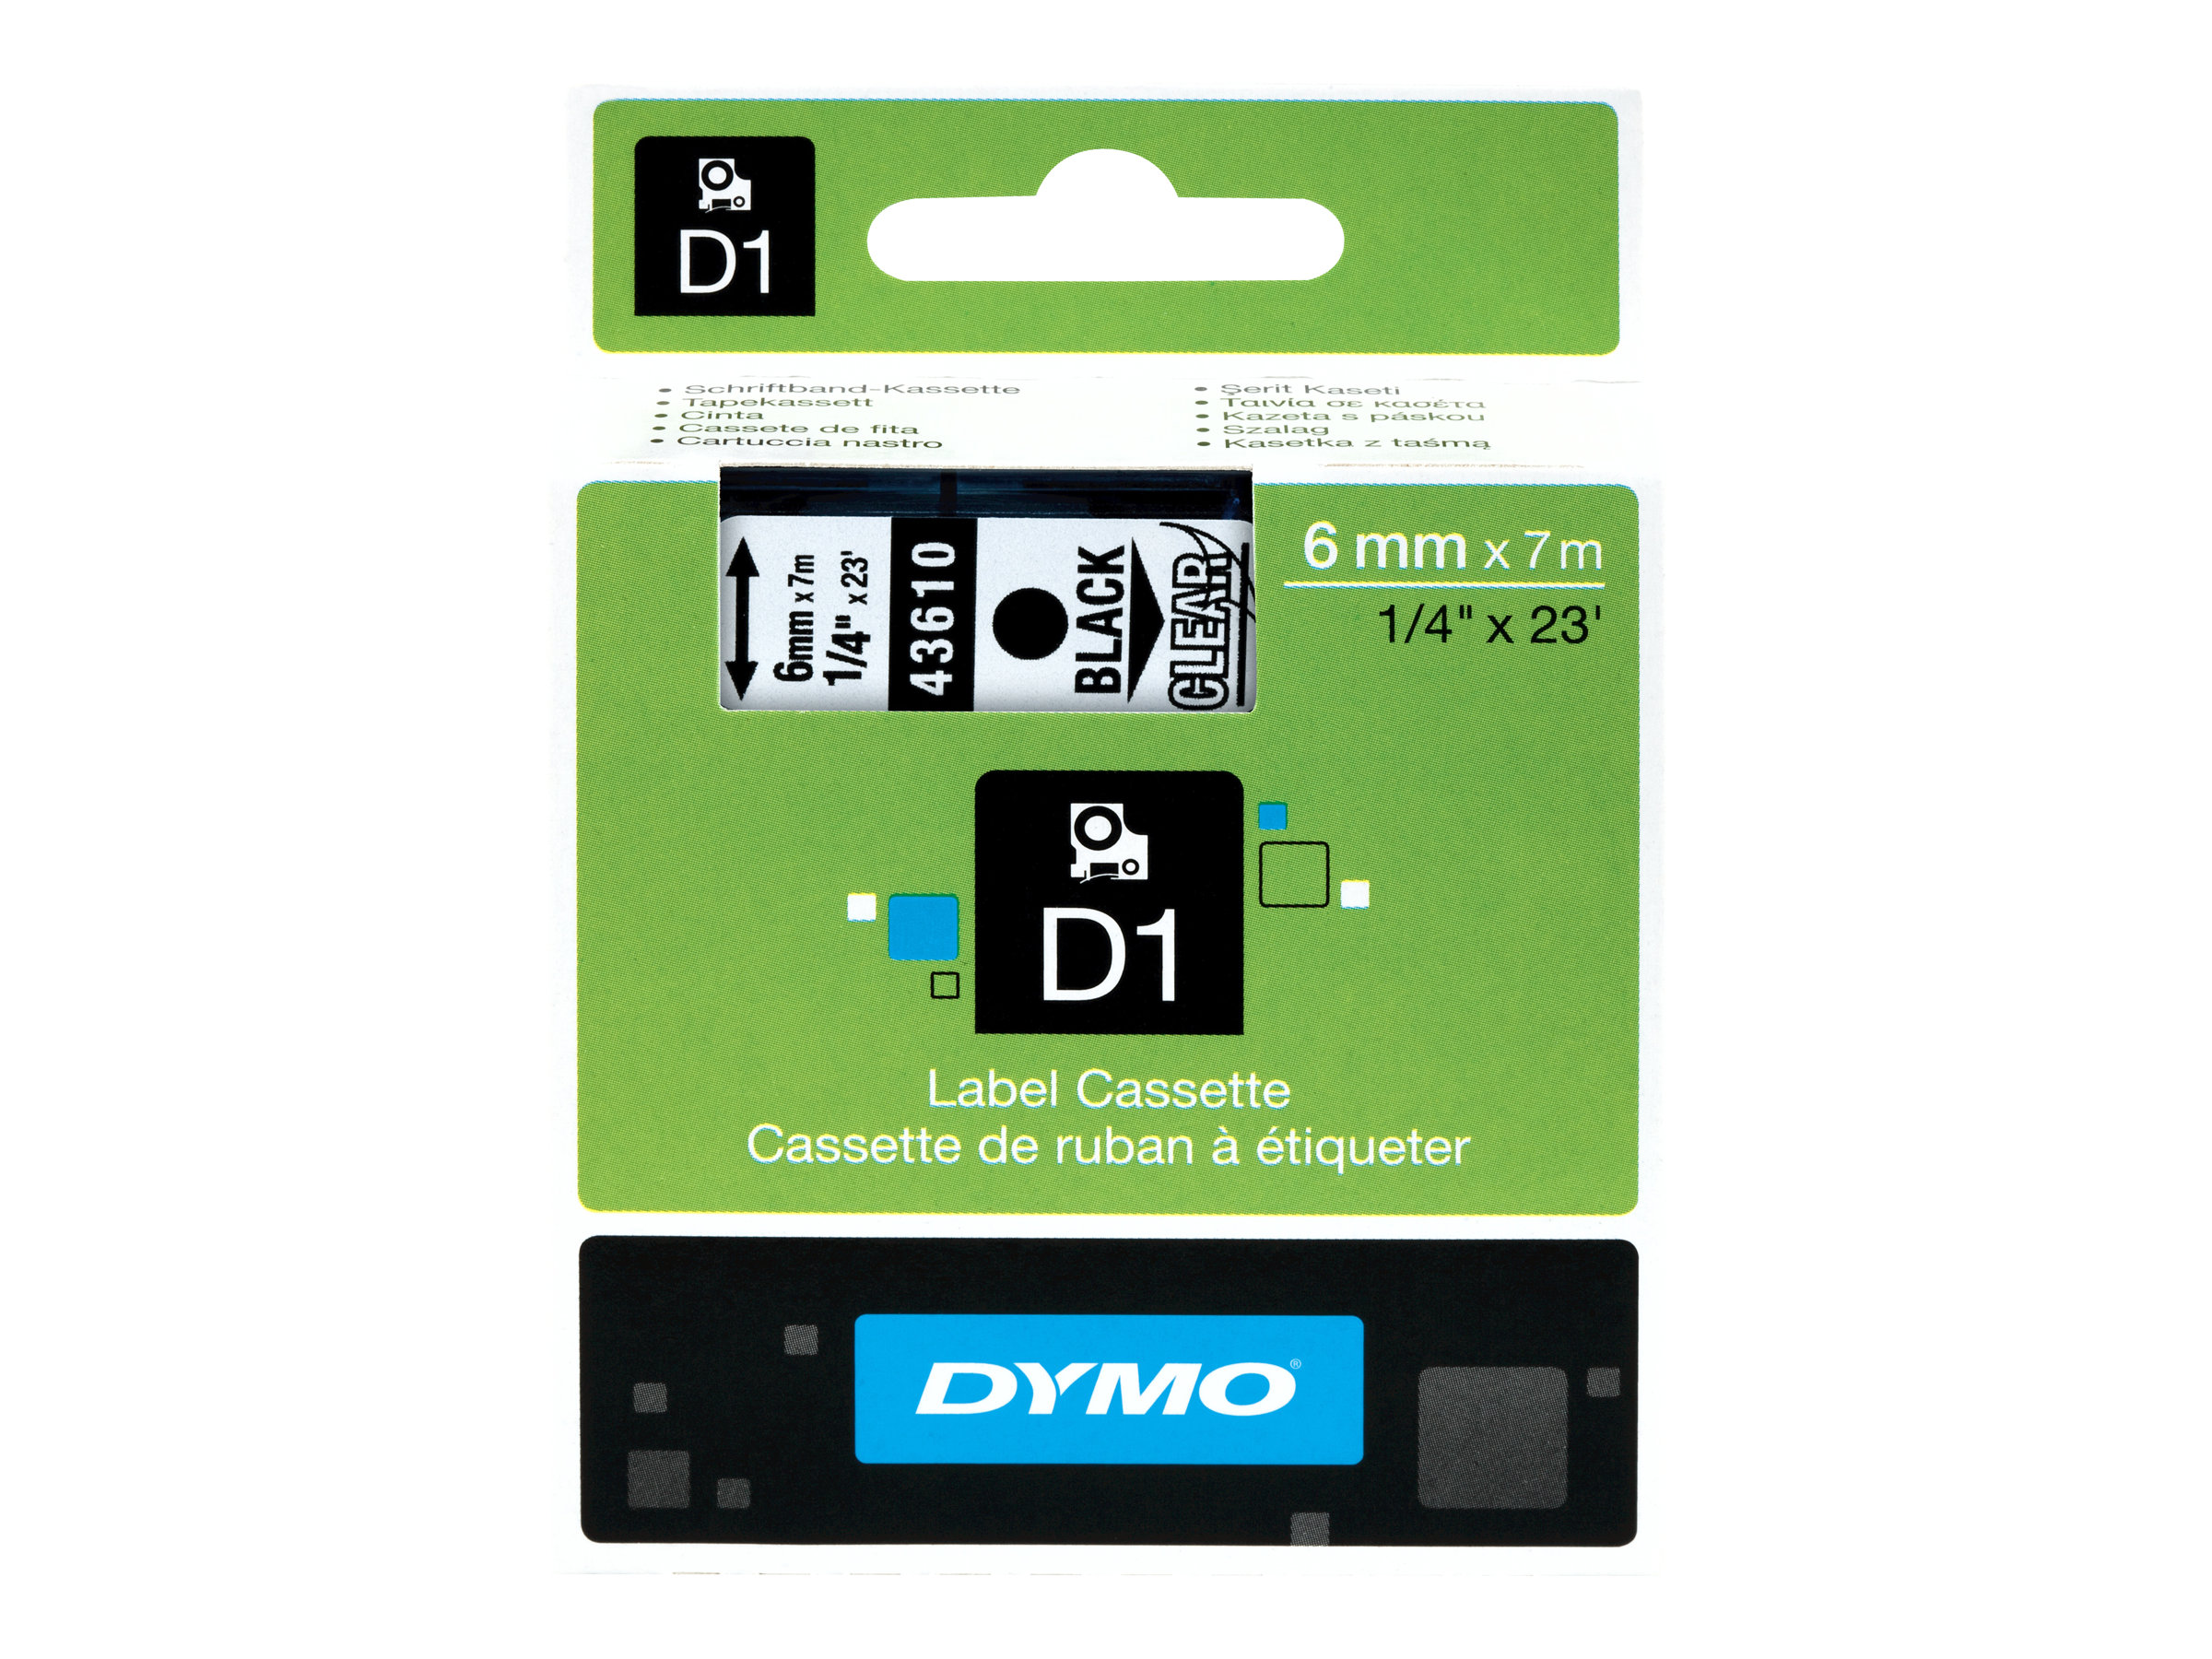 DYMO D1 - Glnzend - schwarz auf durchsichtig - Rolle (0,6 cm x 7 m) 1 Kassette(n) Band - fr LabelMANAGER 100, 160, 210, 220, 2